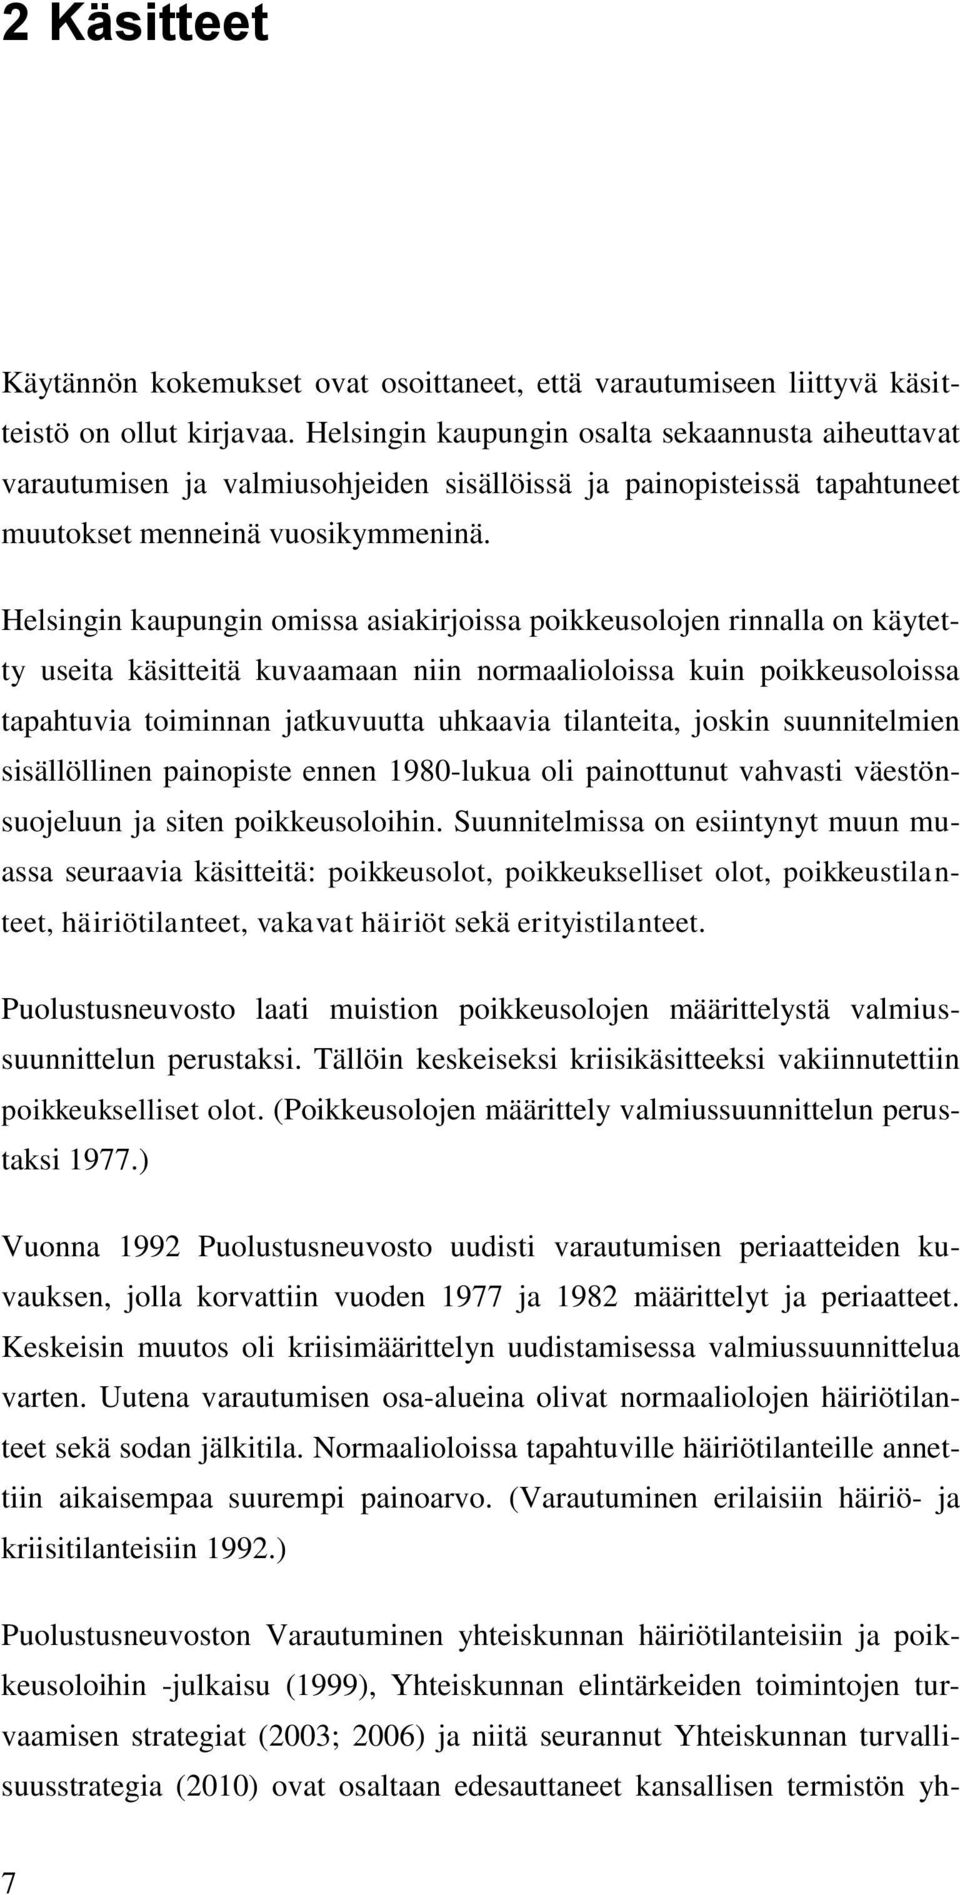 Helsingin kaupungin omissa asiakirjoissa poikkeusolojen rinnalla on käytetty useita käsitteitä kuvaamaan niin normaalioloissa kuin poikkeusoloissa tapahtuvia toiminnan jatkuvuutta uhkaavia